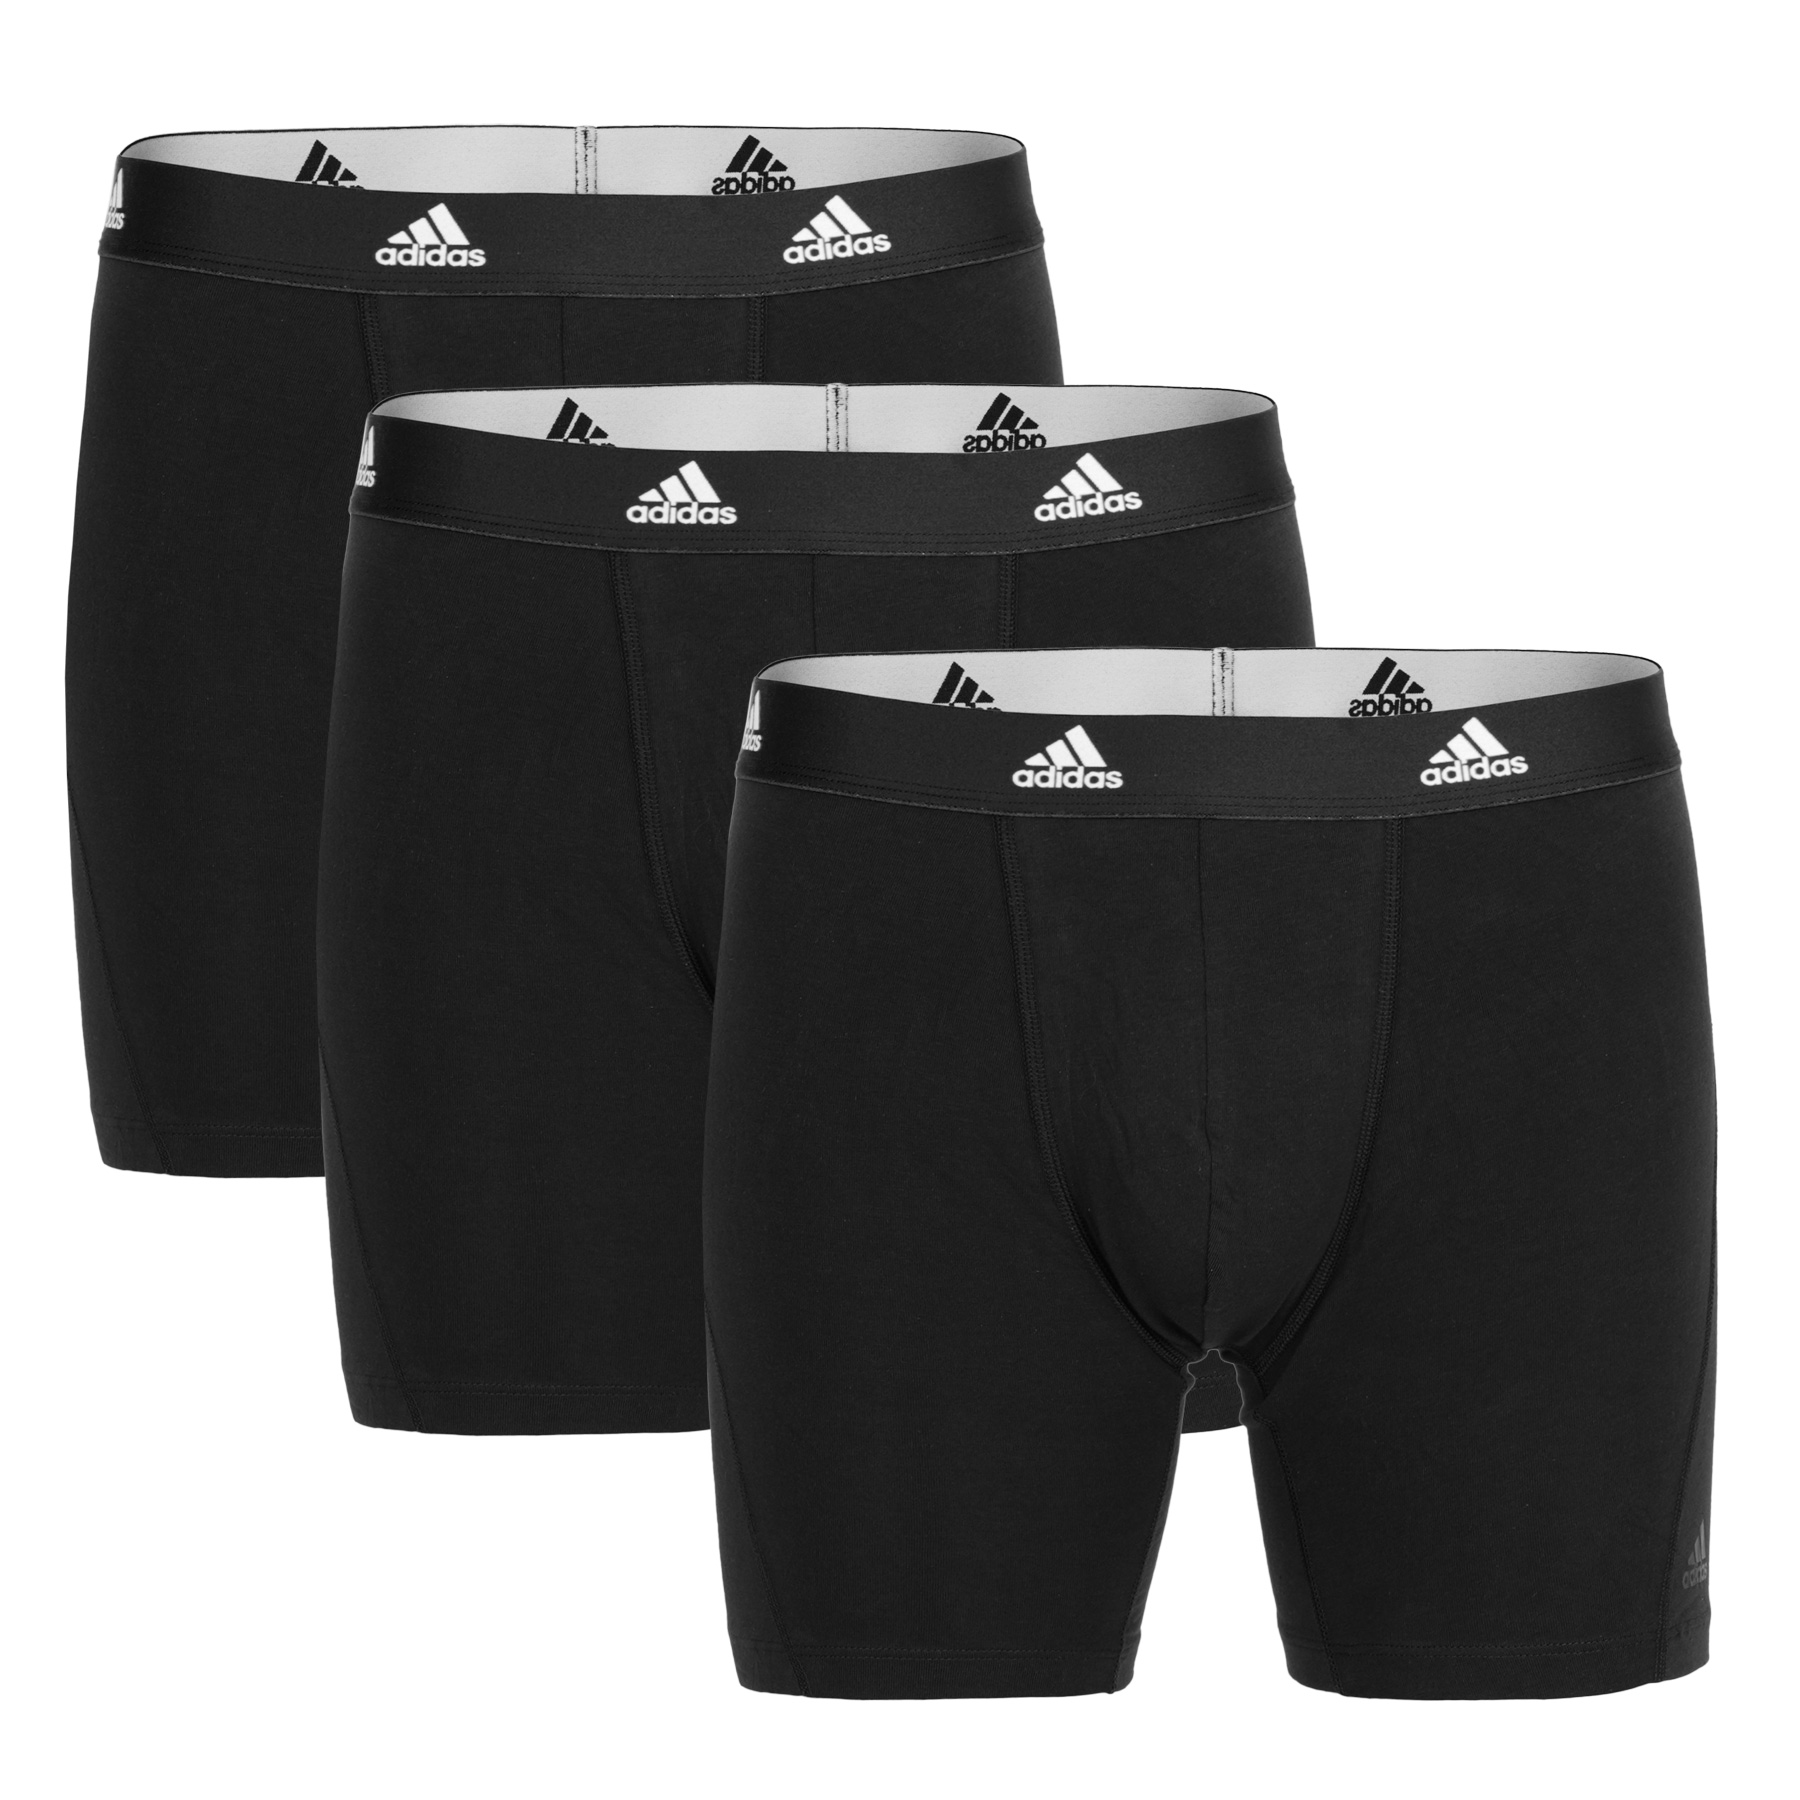 Produktbild von adidas Sports Underwear Active Flex Cotton Boxershorts Herren - 3 Pack - 000-schwarz